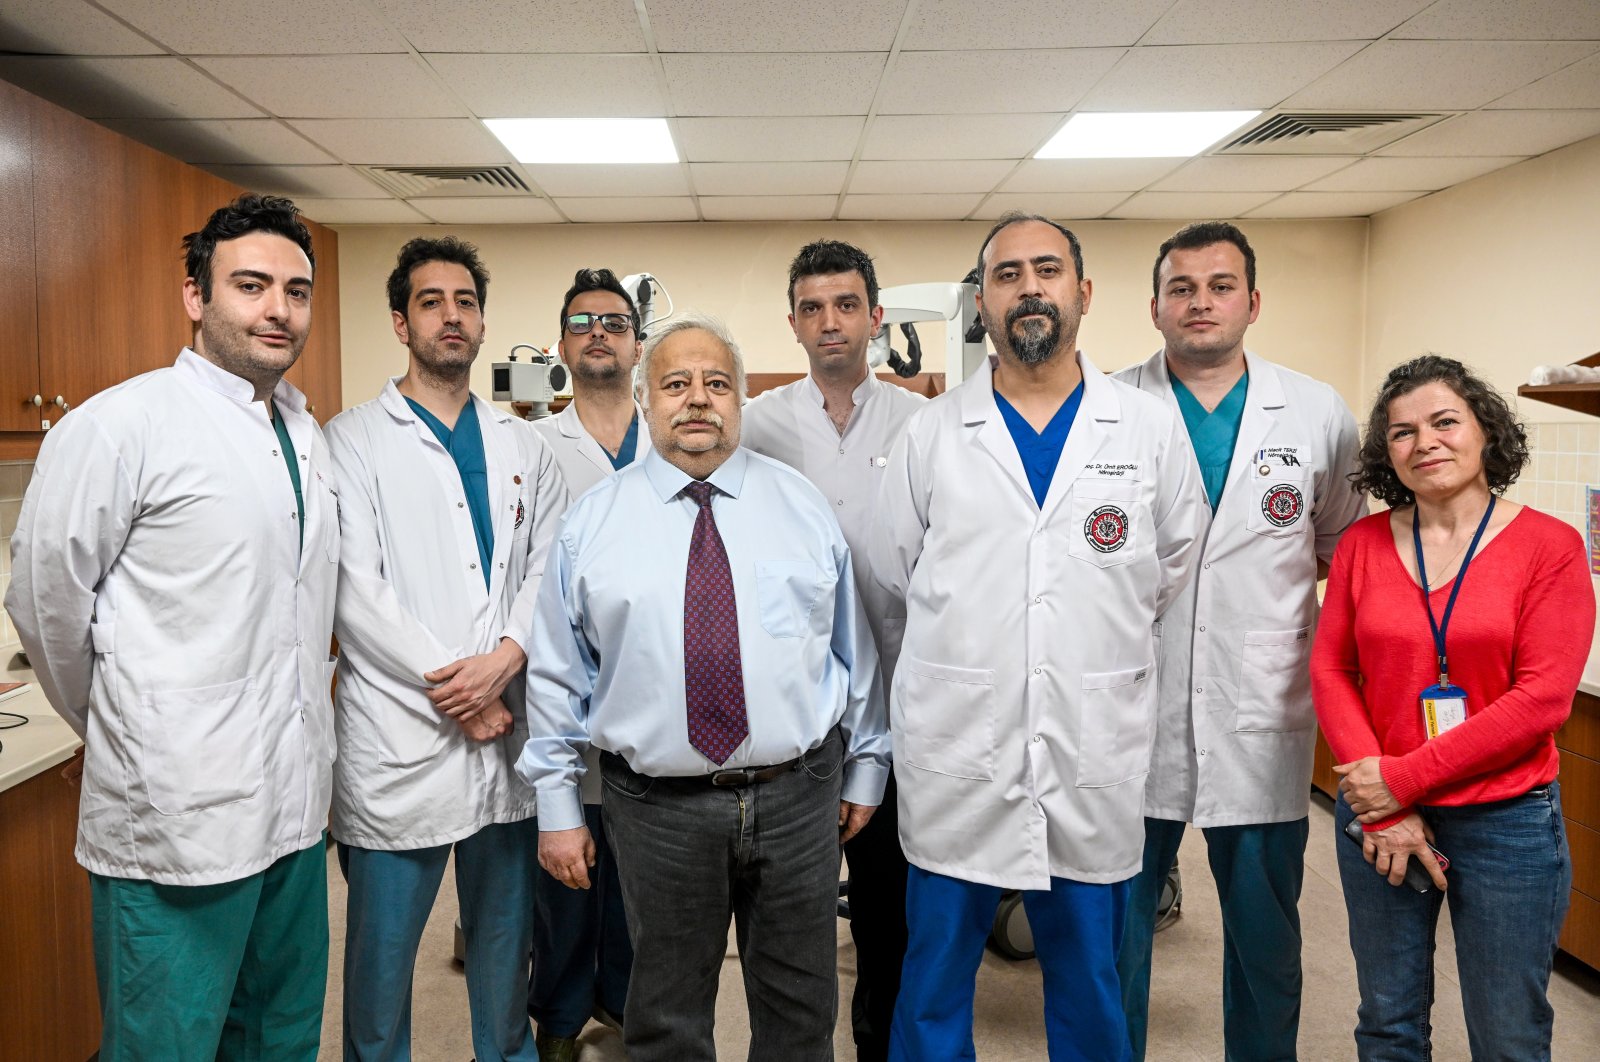 Ahli bedah Turki berhasil melakukan operasi otak dengan bantuan robot